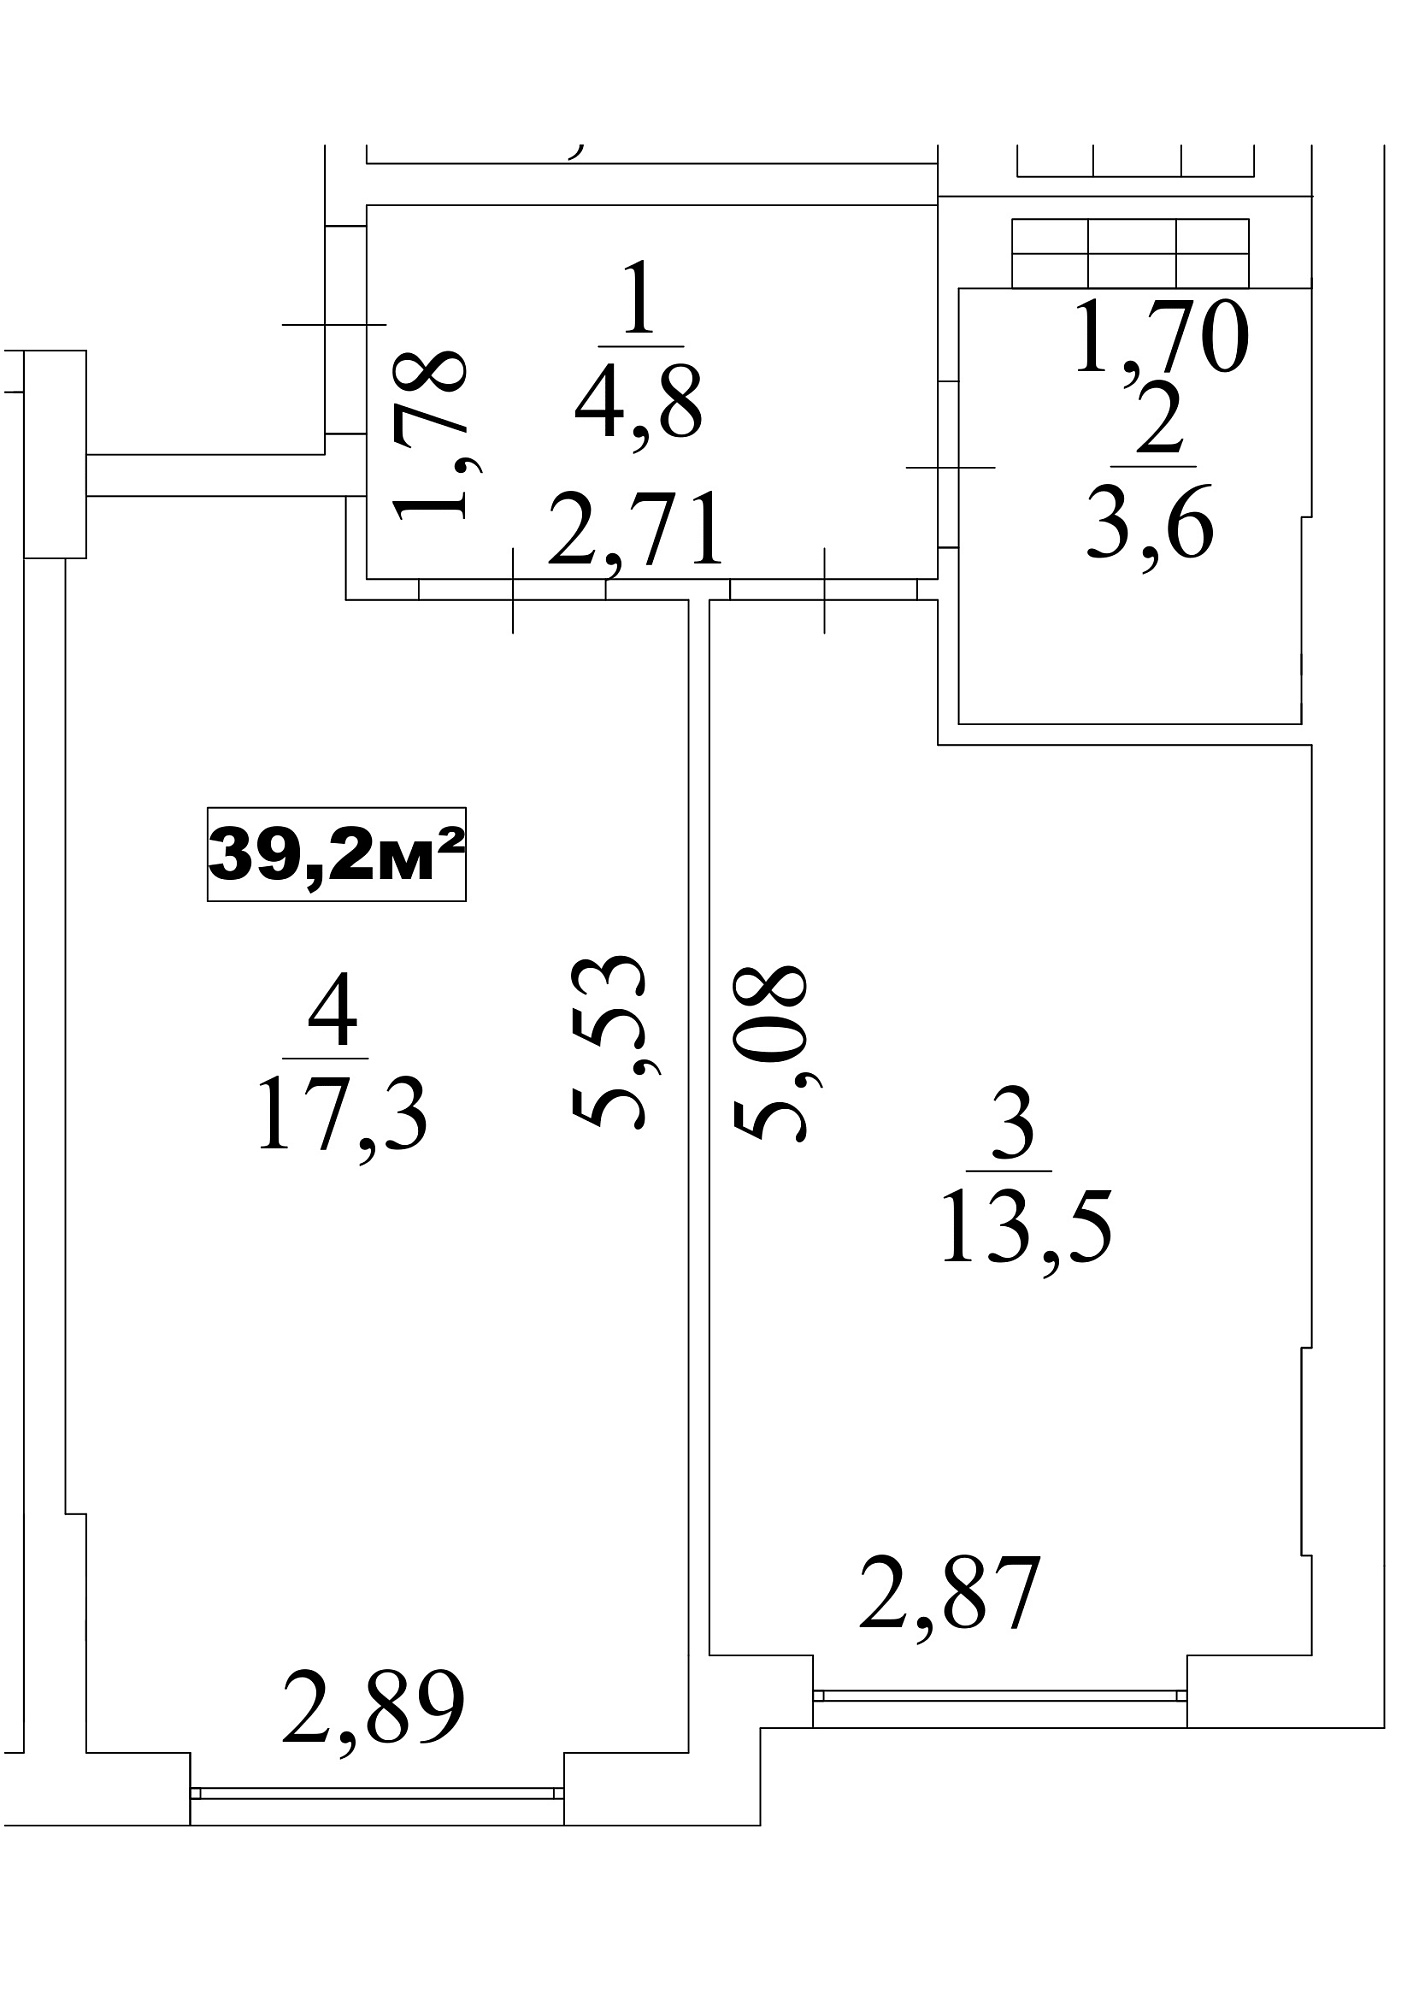 Планировка 1-к квартира площей 39.2м2, AB-10-08/0070в.